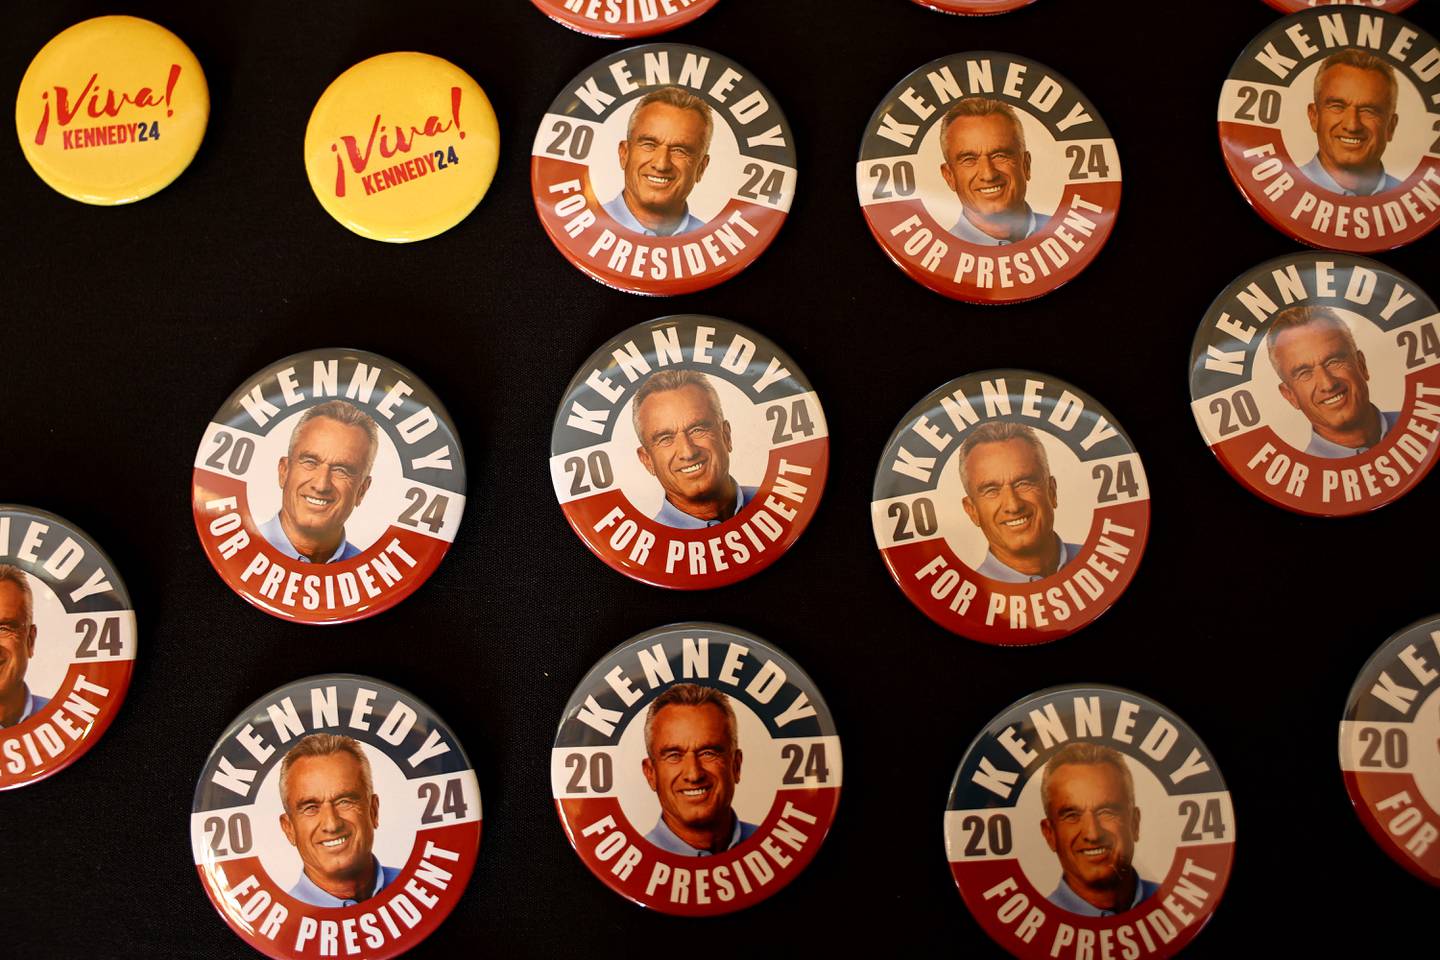 Según las encuestas, la popularidad de RFK Jr., que ronda el 10%, complica la estrategia de la campaña de Biden de convertir la votación en una elección entre él y Donald Trump.